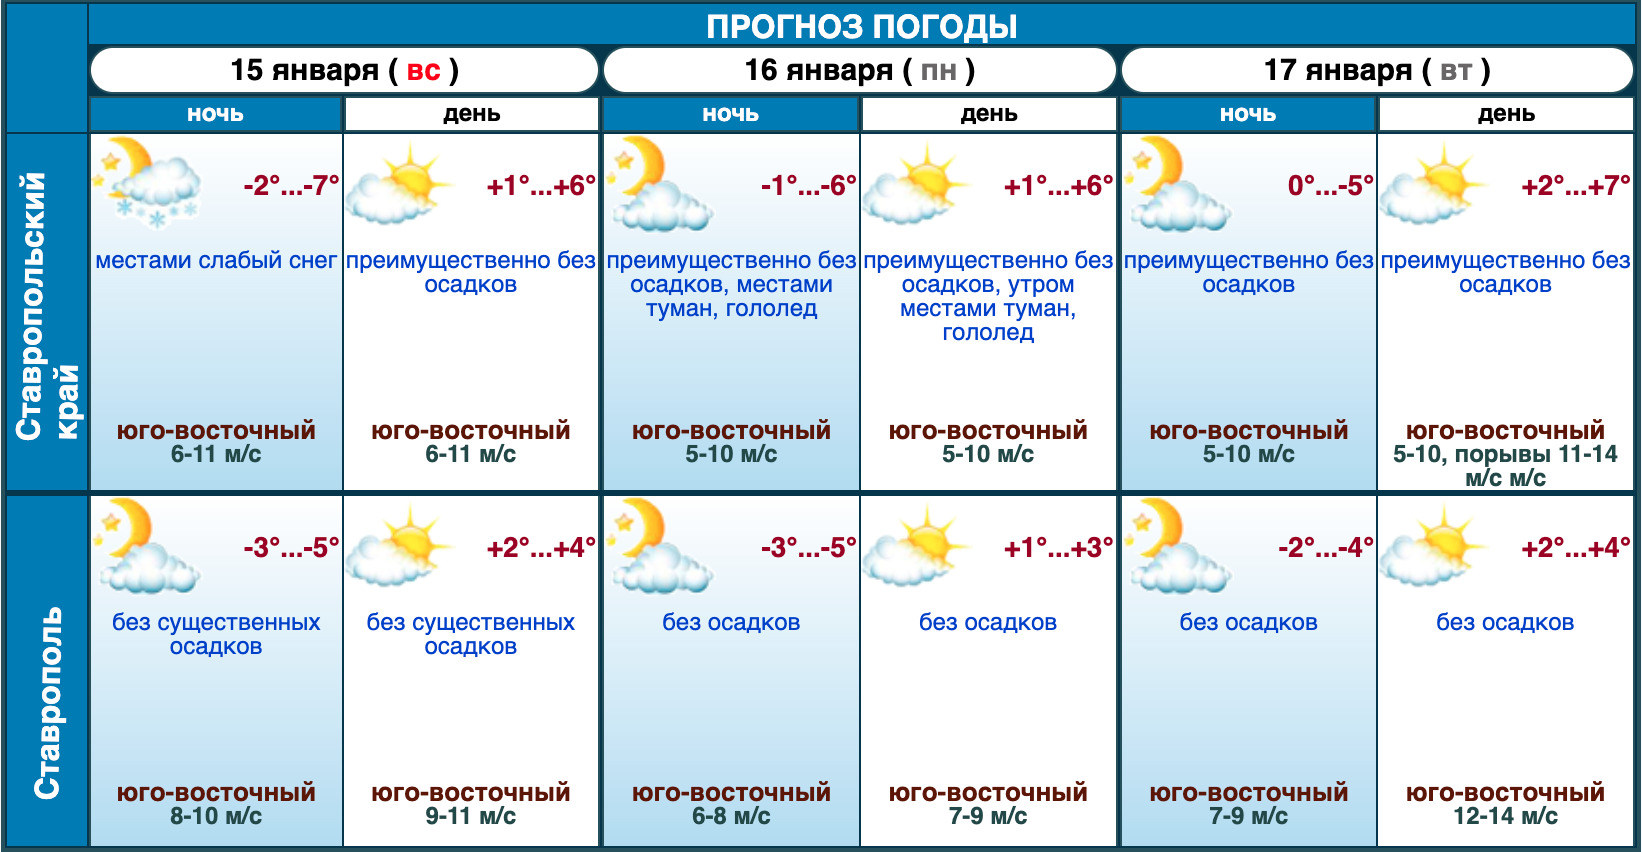 Погода 6 сентября. Гидрометцентр. Погода в Ставрополе. Погода в Ставрополе на 10 дней. Град прогноз погоды.